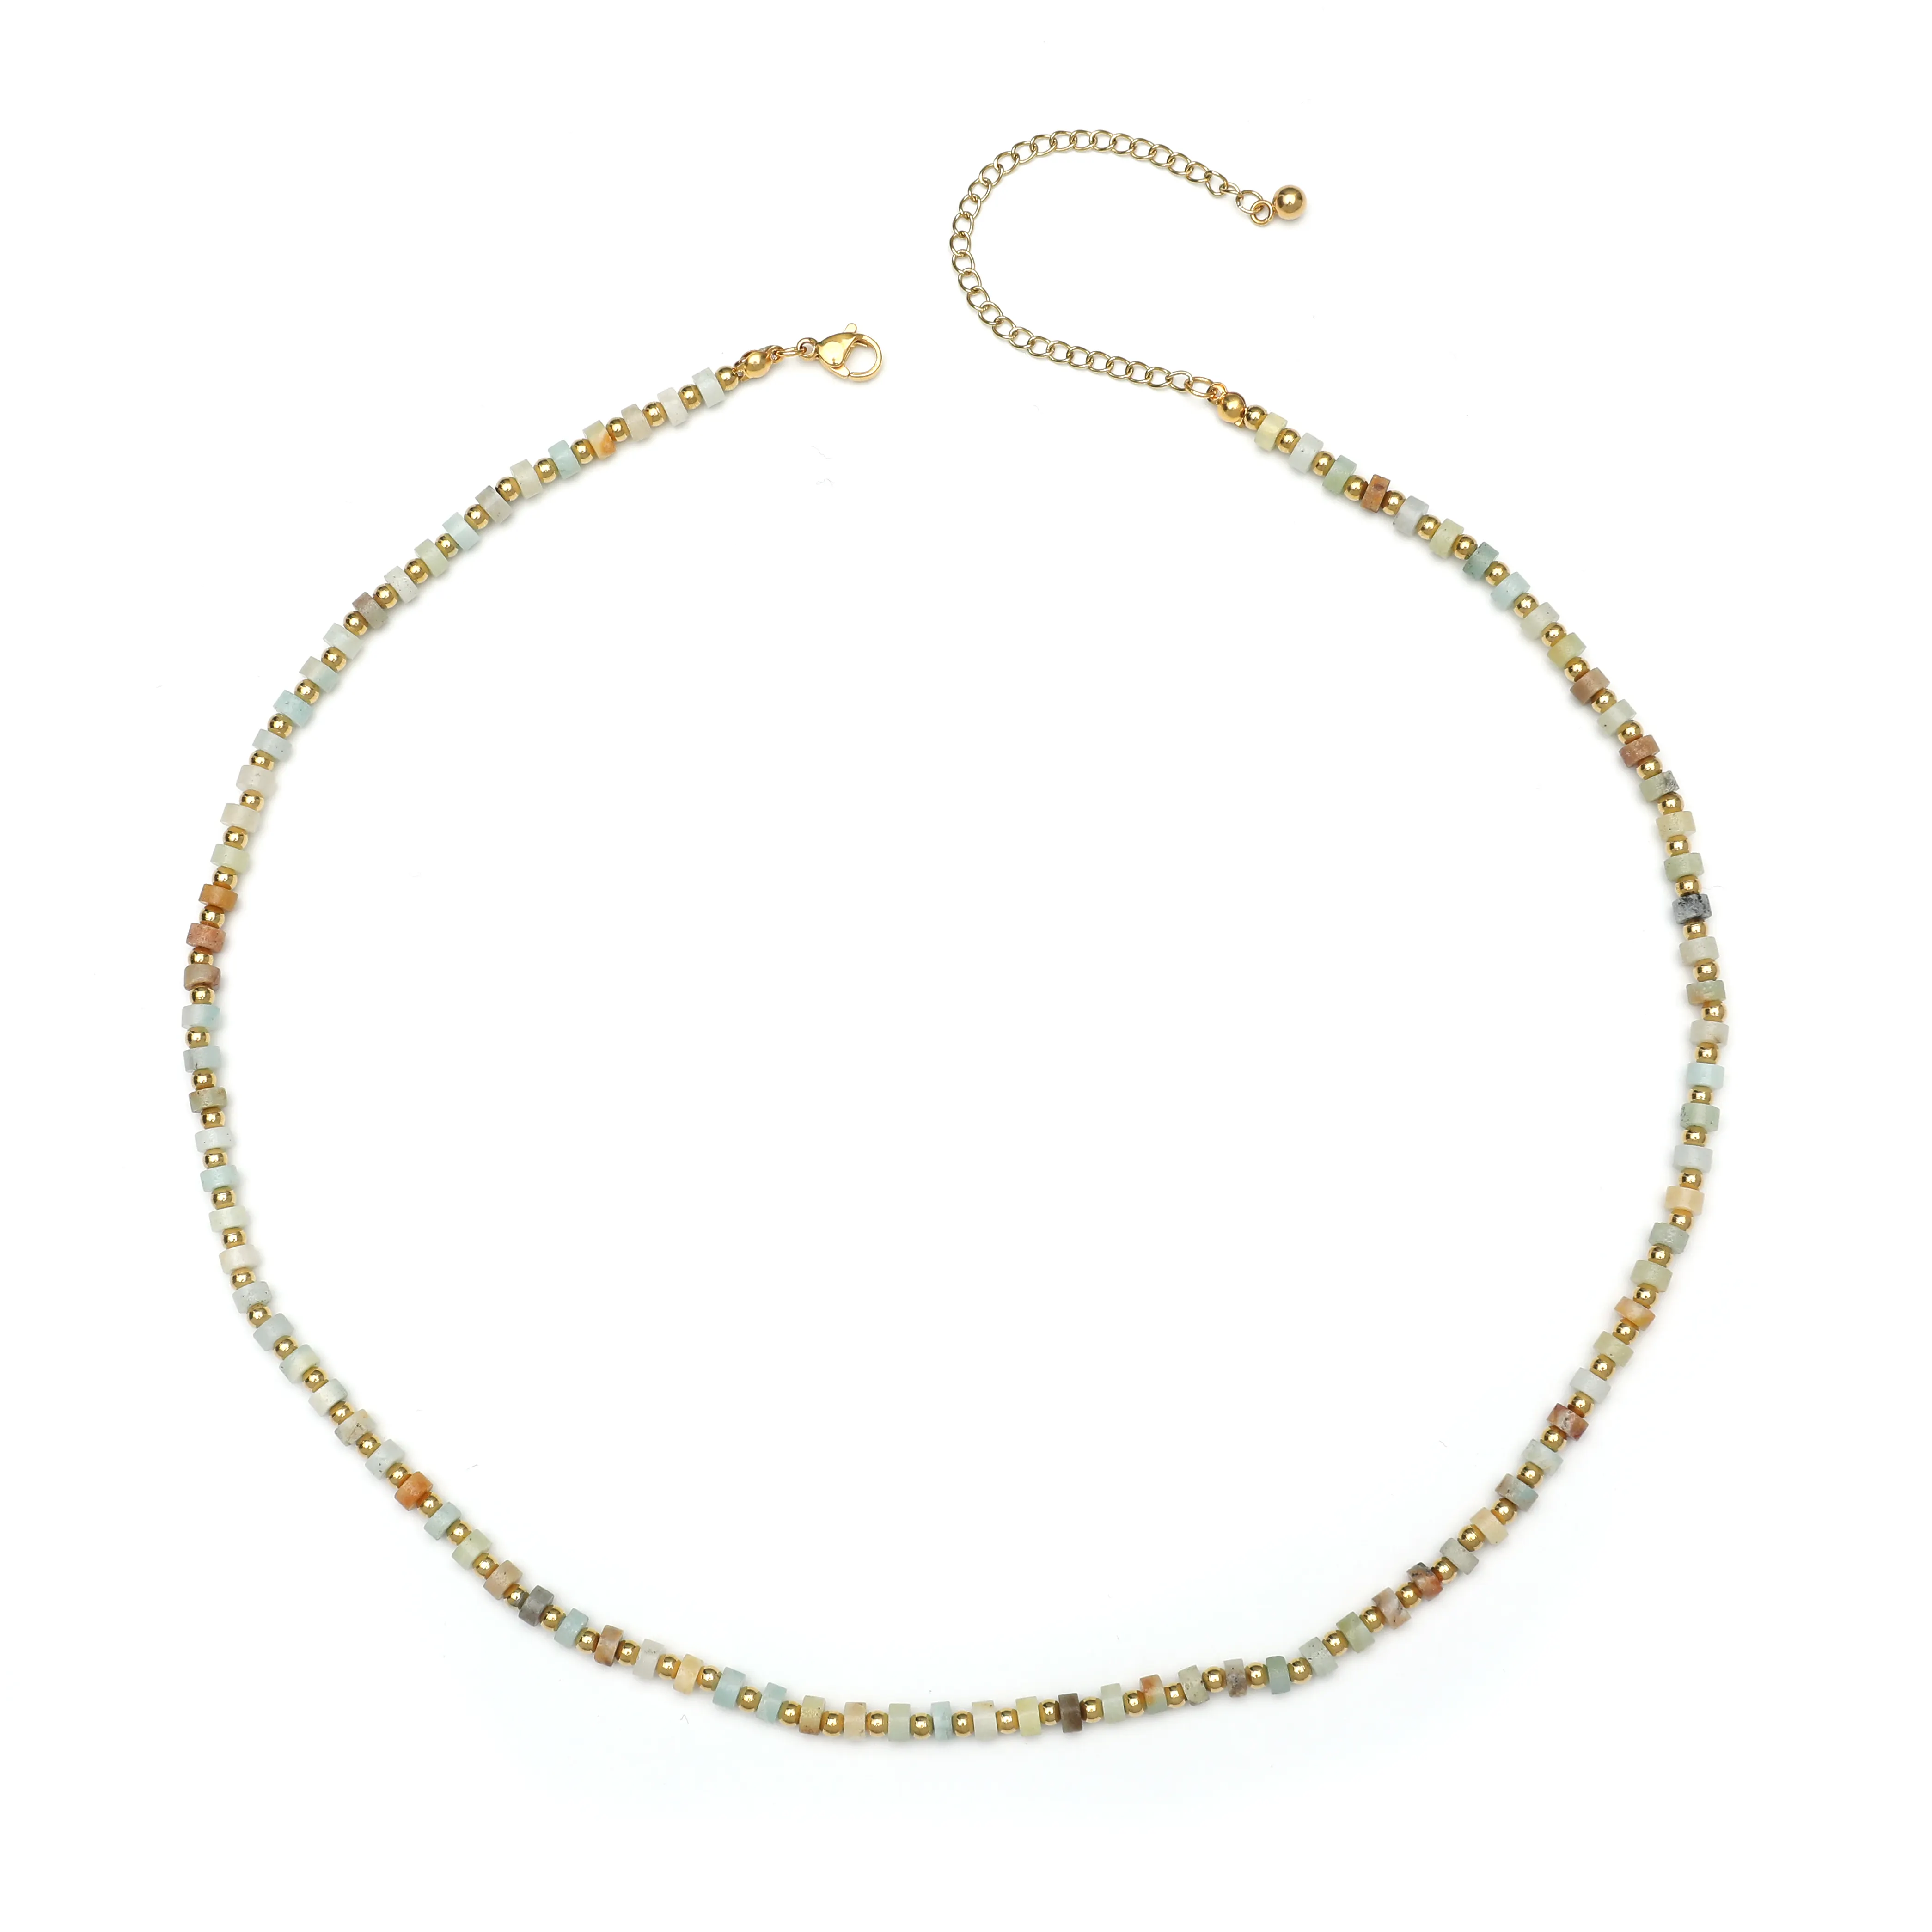 Jymoon kalung manik-manik kristal Bohemian, perhiasan kalung manik-manik Multi warna kepribadian modis wanita